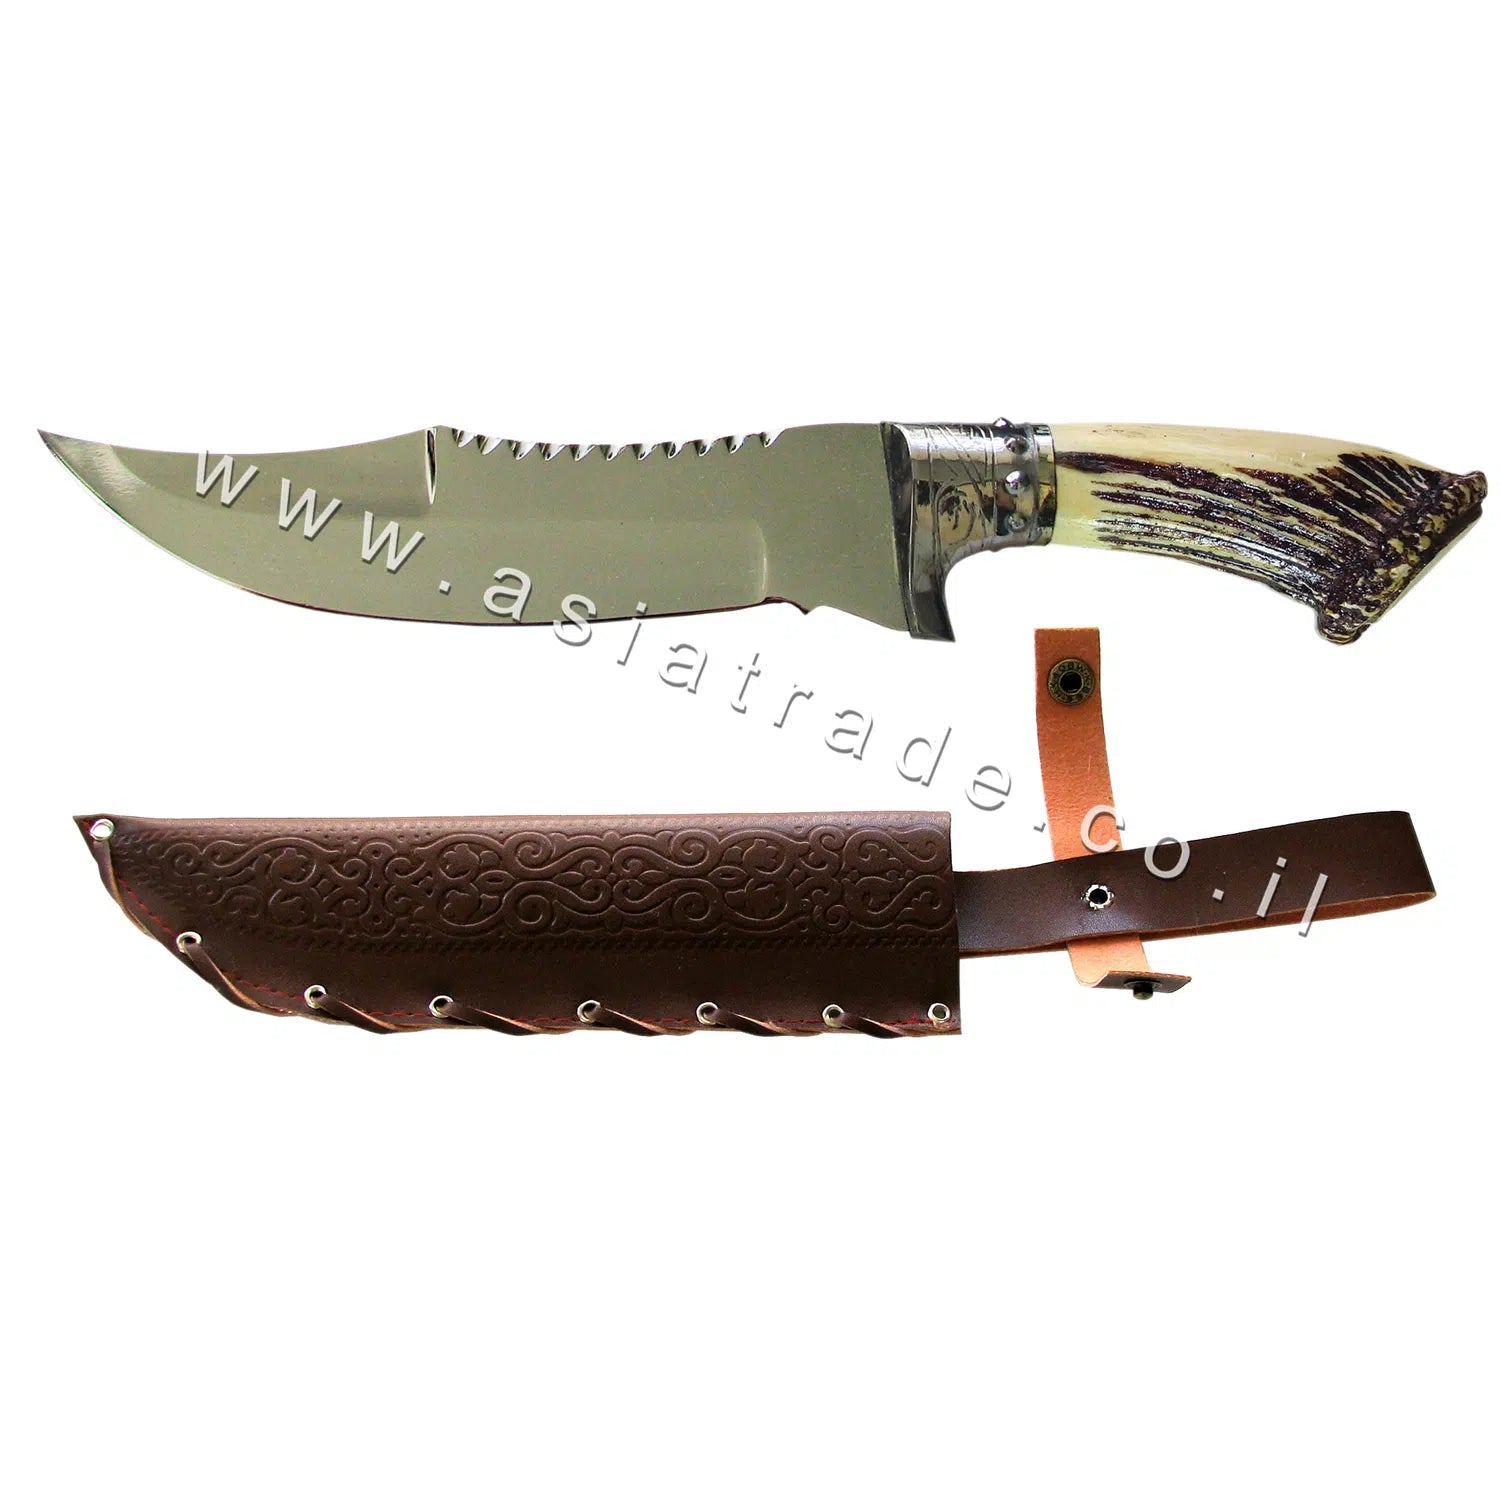 Узбекский нож ручной работы, Пчак - CHUST 1122